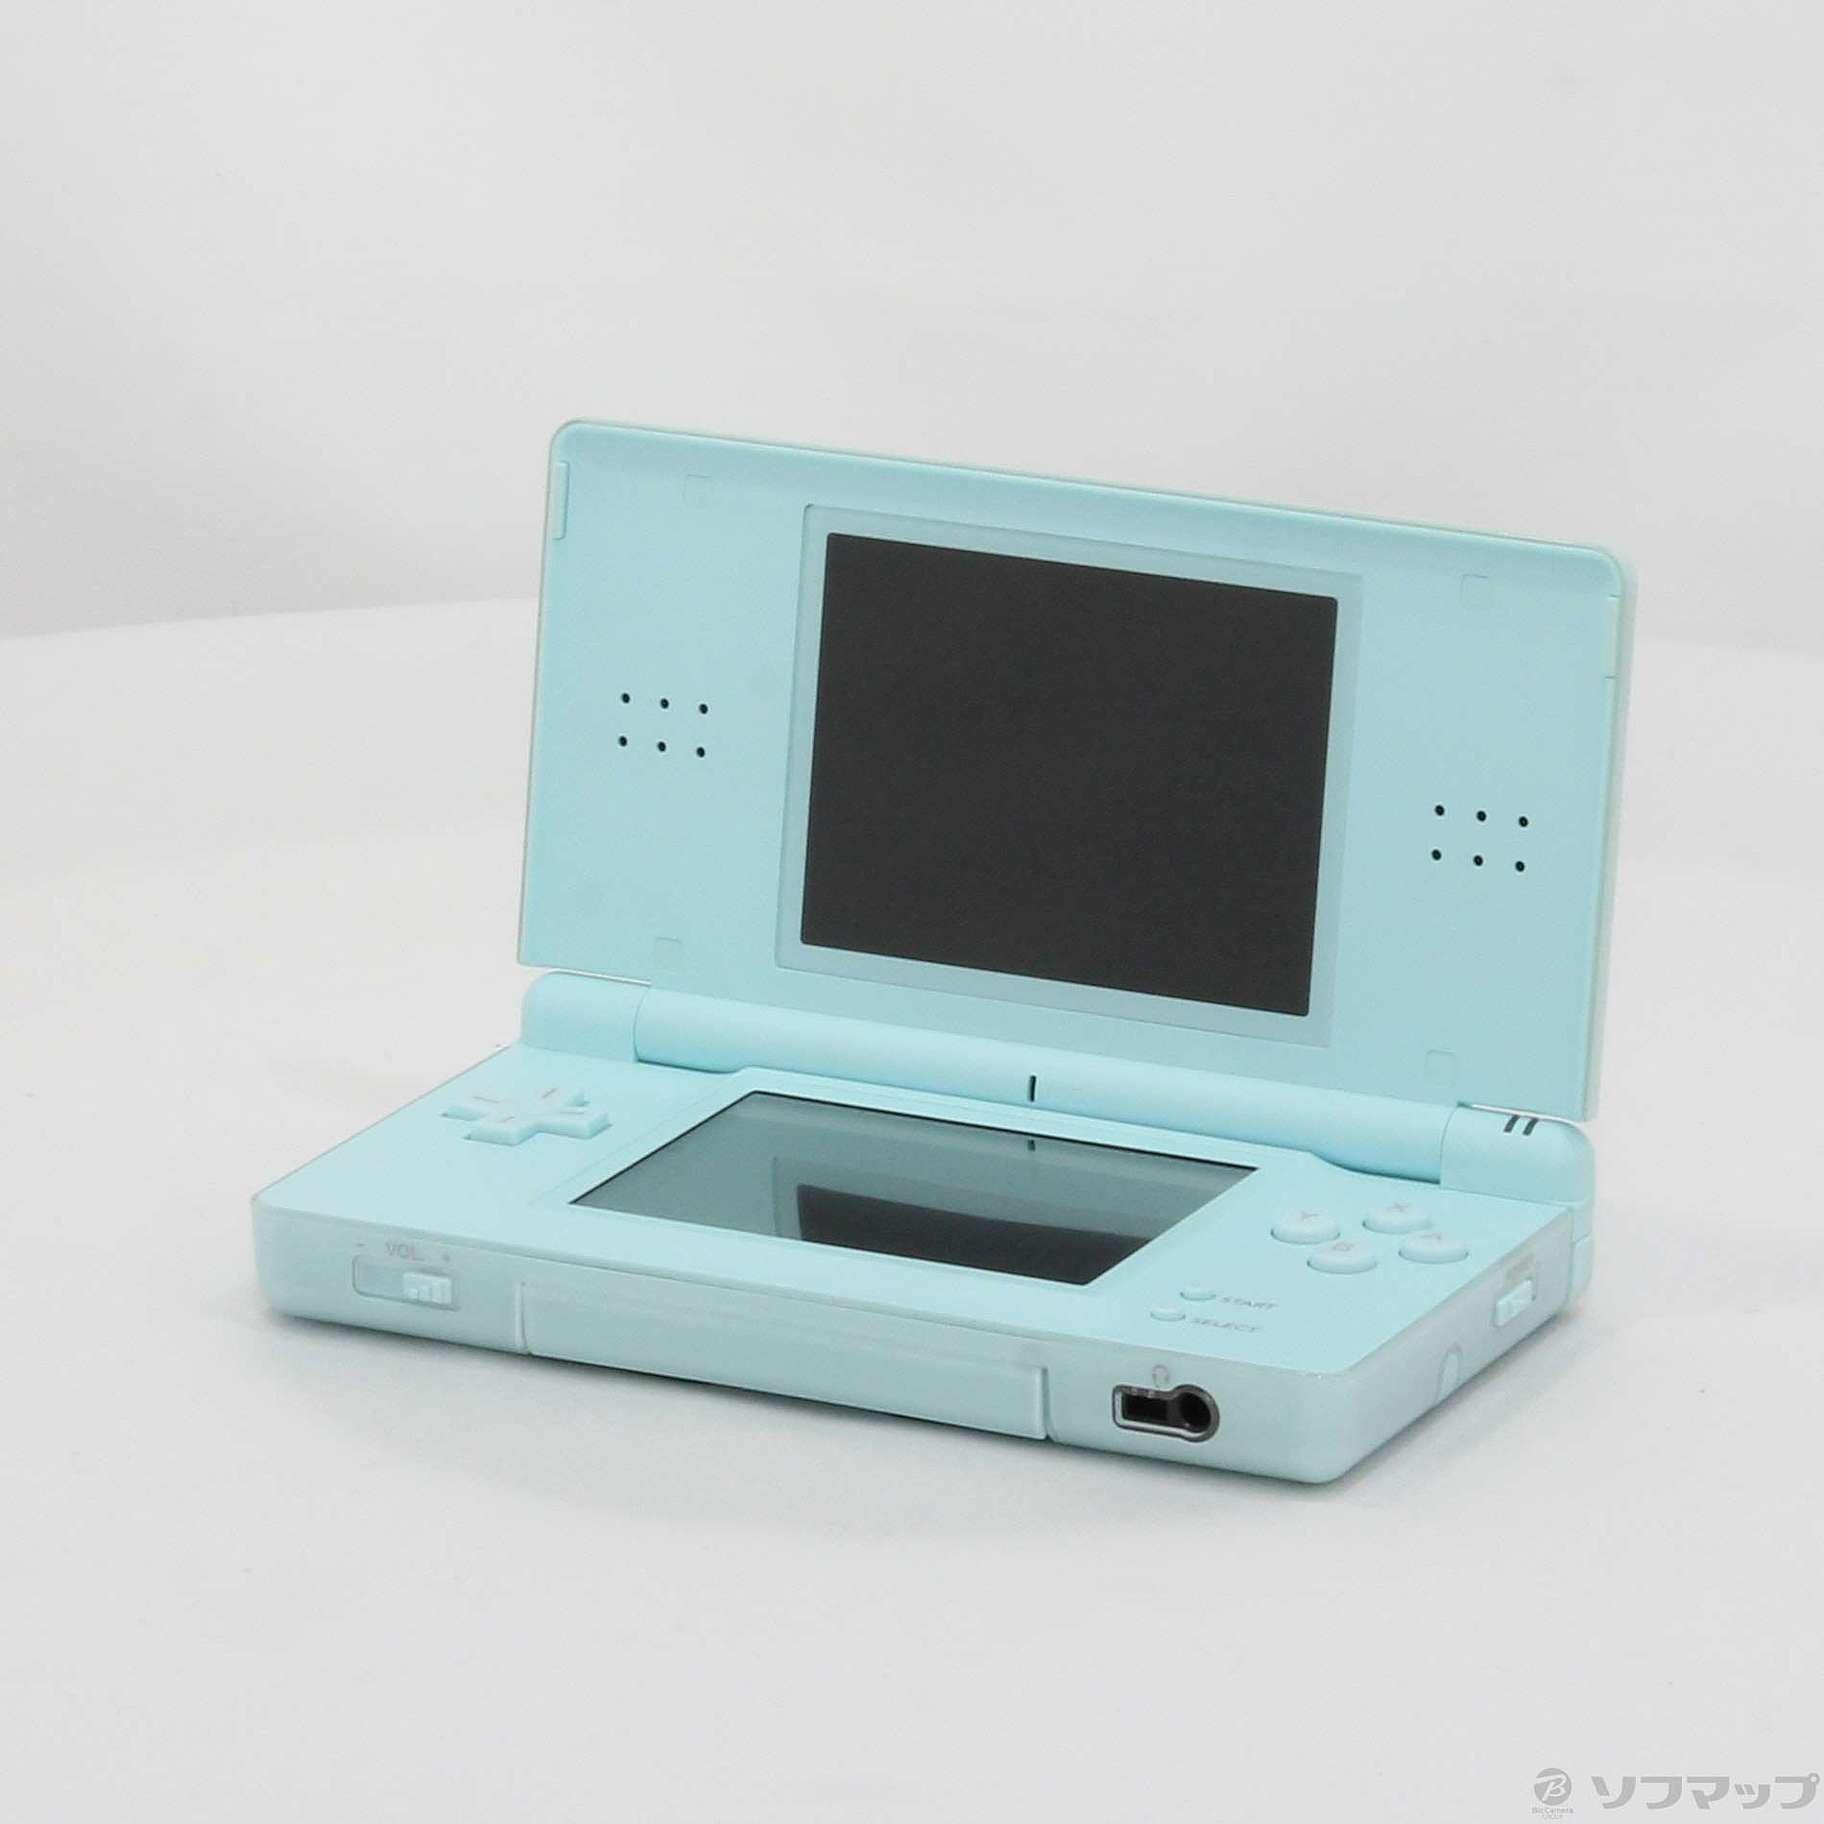 任天堂DS lite - 携帯用ゲーム本体